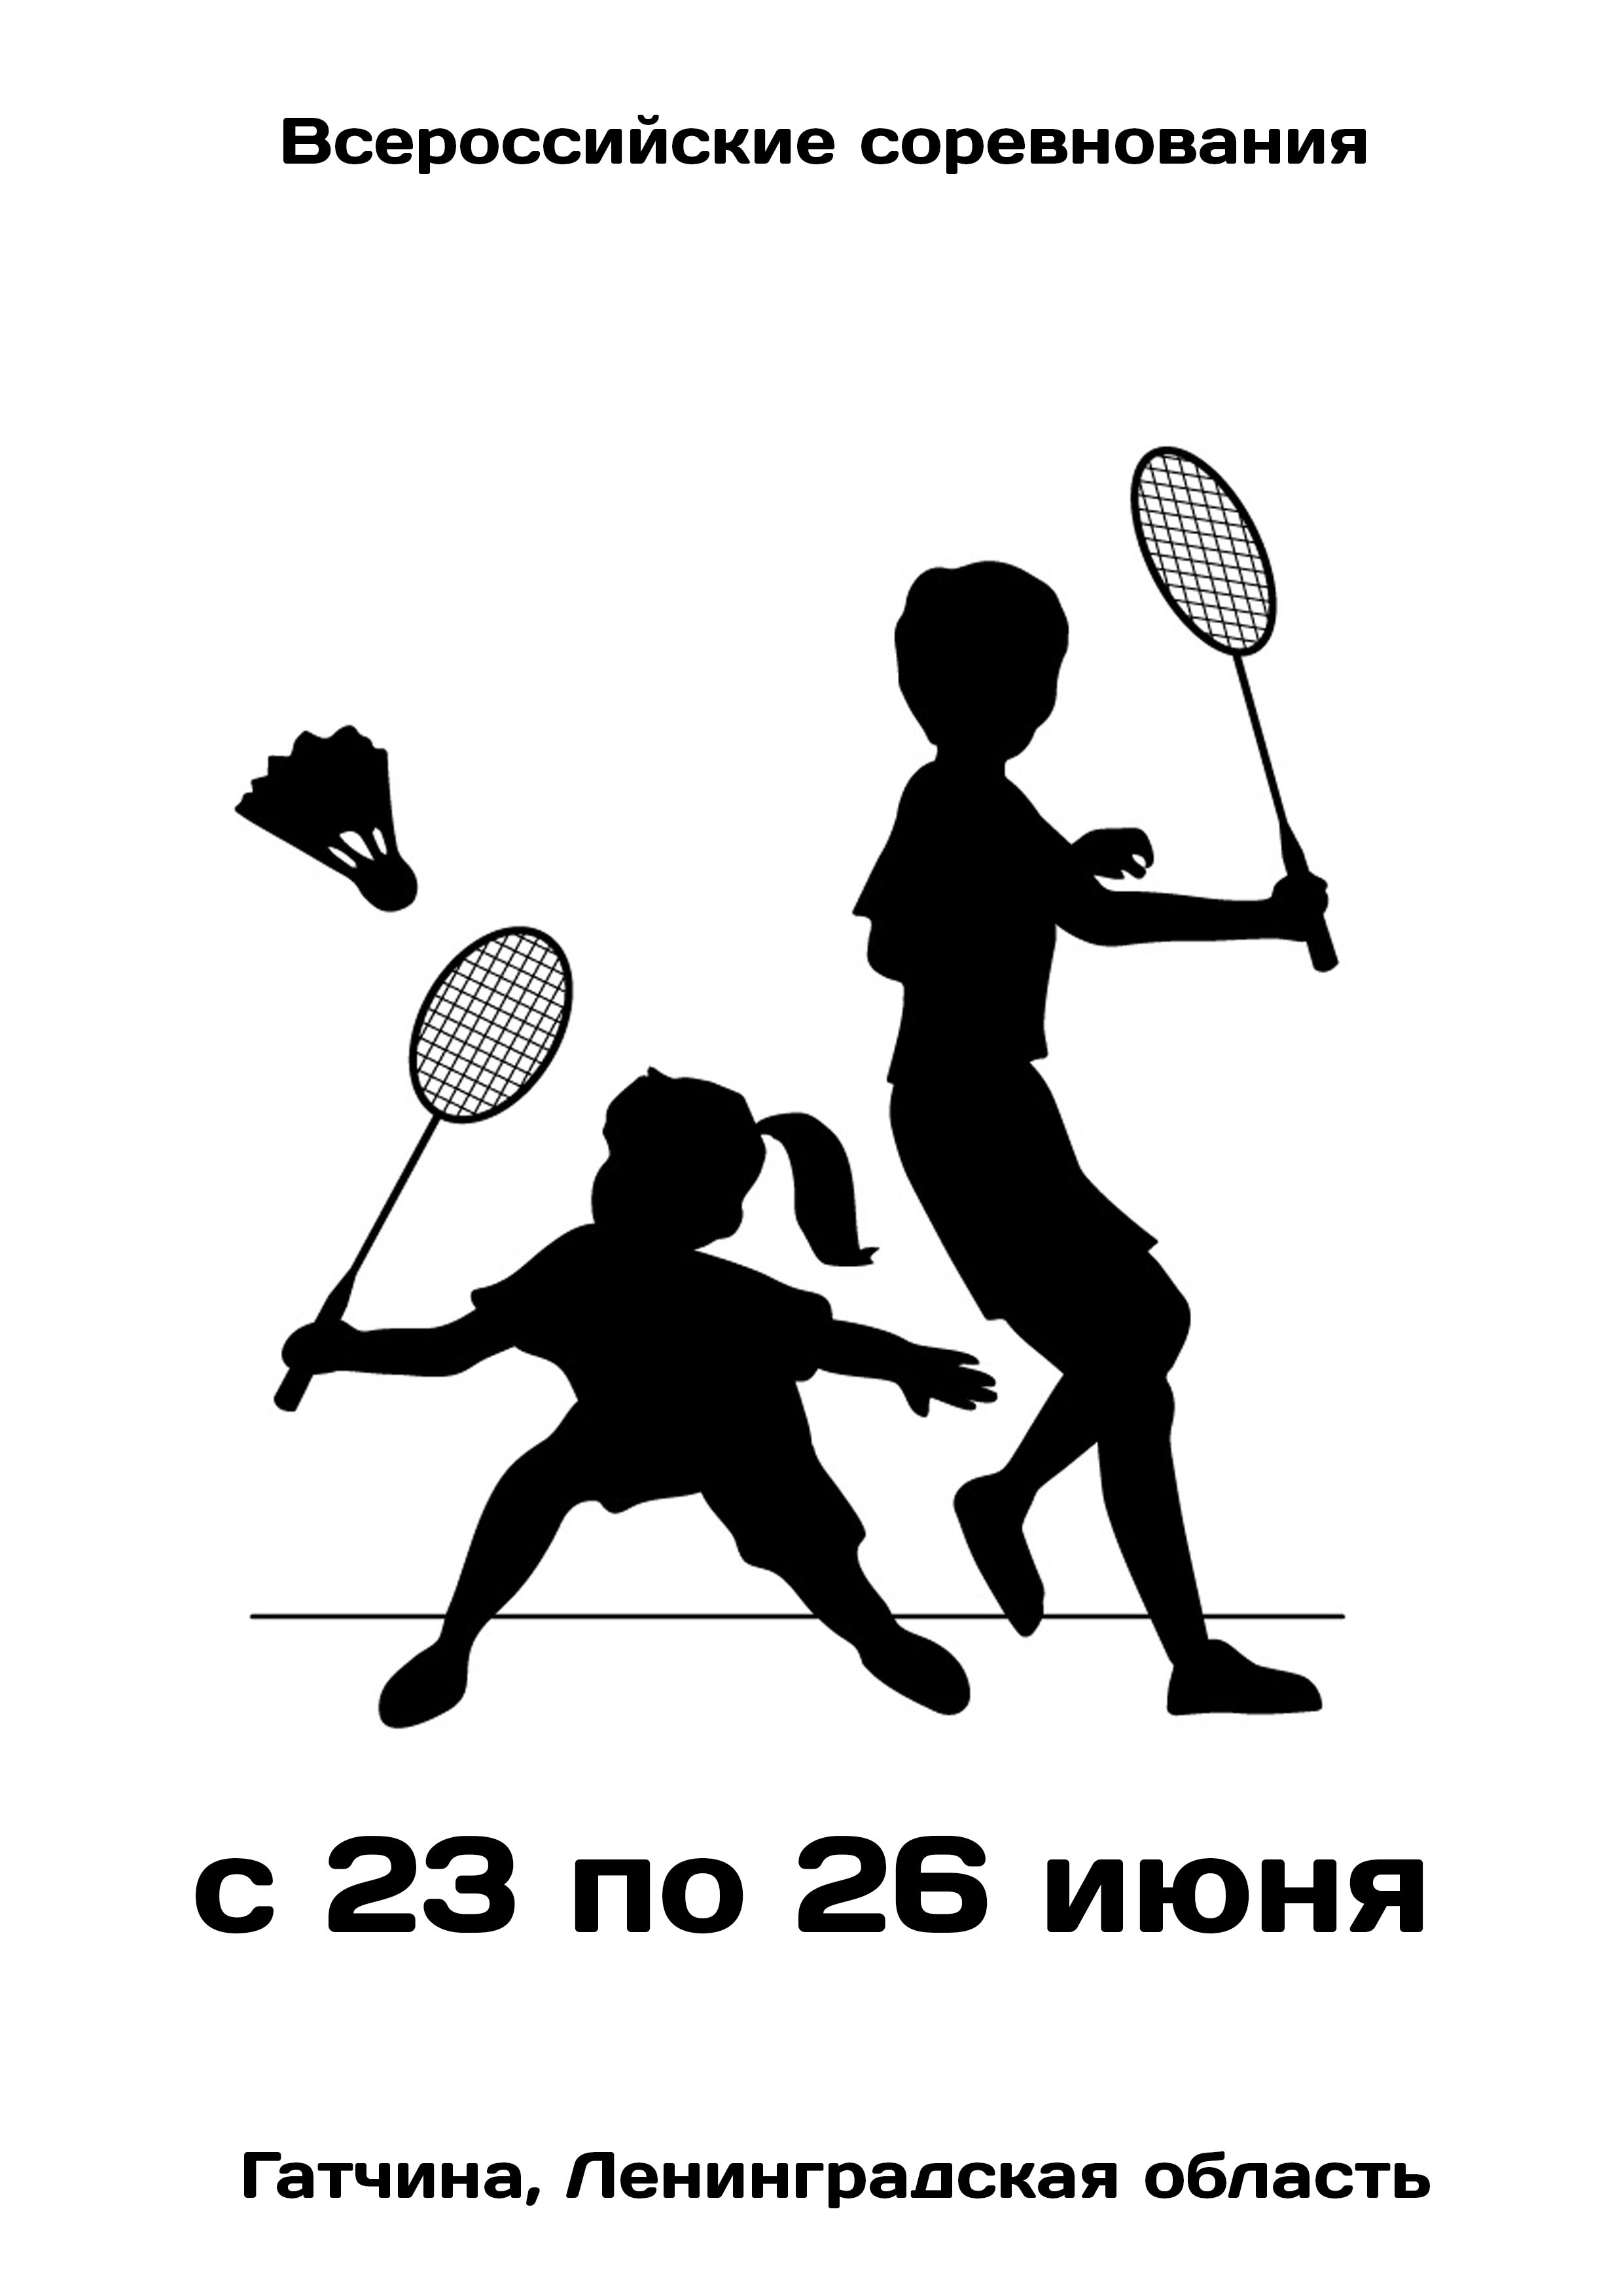 Всероссийские соревнования  по бадминтону 23  - июнундагы
 2023  - жыл
 